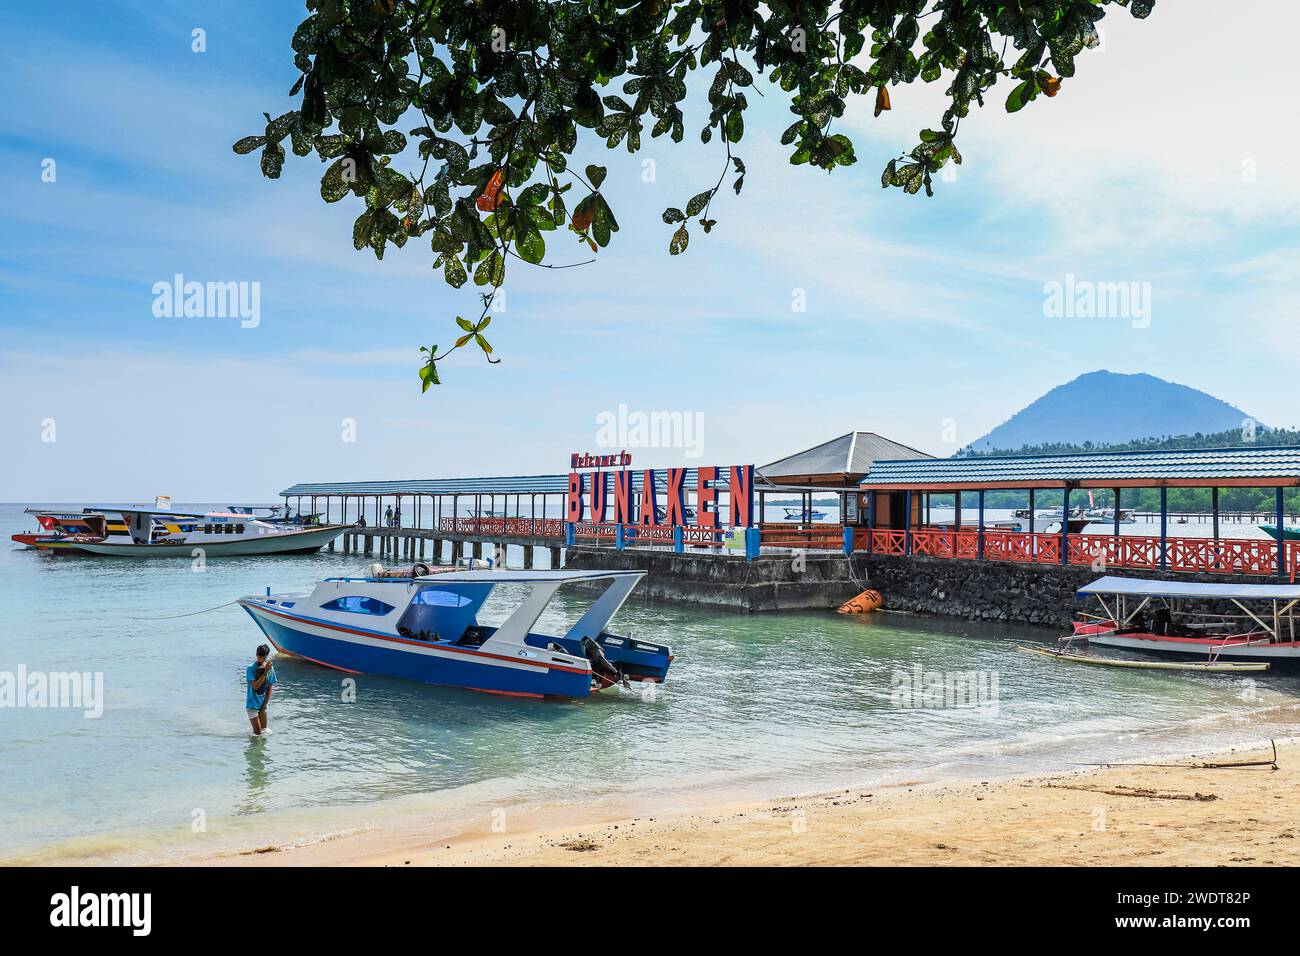 Bootssteg und Willkommensschild für Touristenboote in der zentralen Bucht dieser beliebten Urlaubs- und Tauchinsel Bunaken Island, Nord-Sulawesi, Indonesien Stockfoto